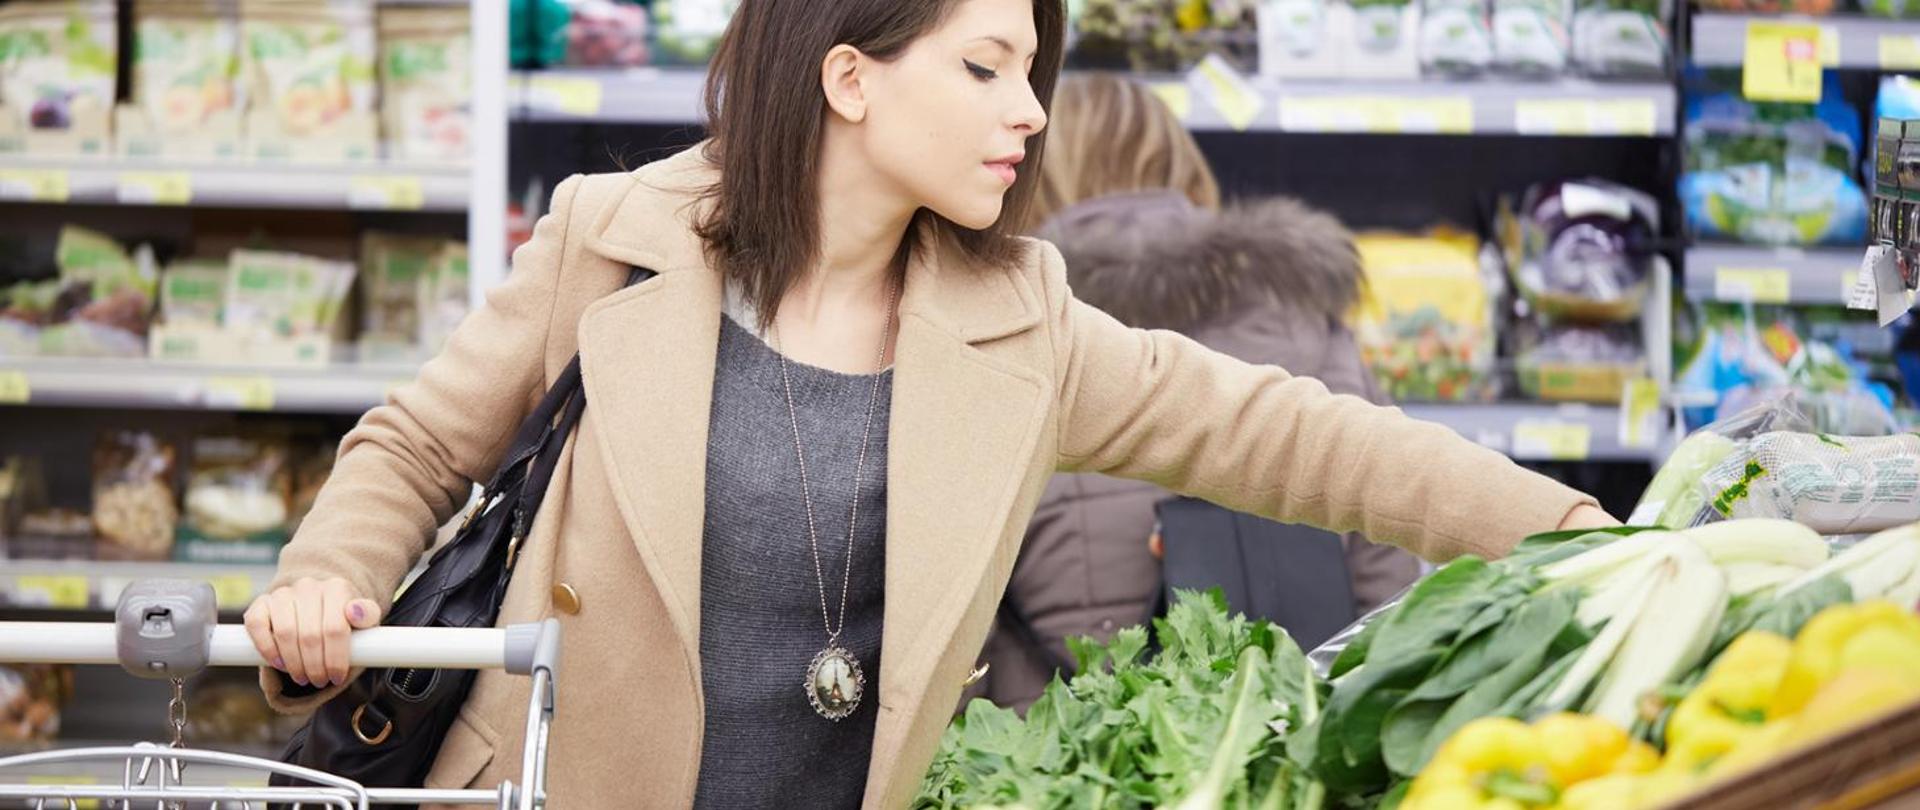 w sklepie kobieta robiąca zakupy stoi przed stoiskiem z warzywami i sięga po jedno z nich